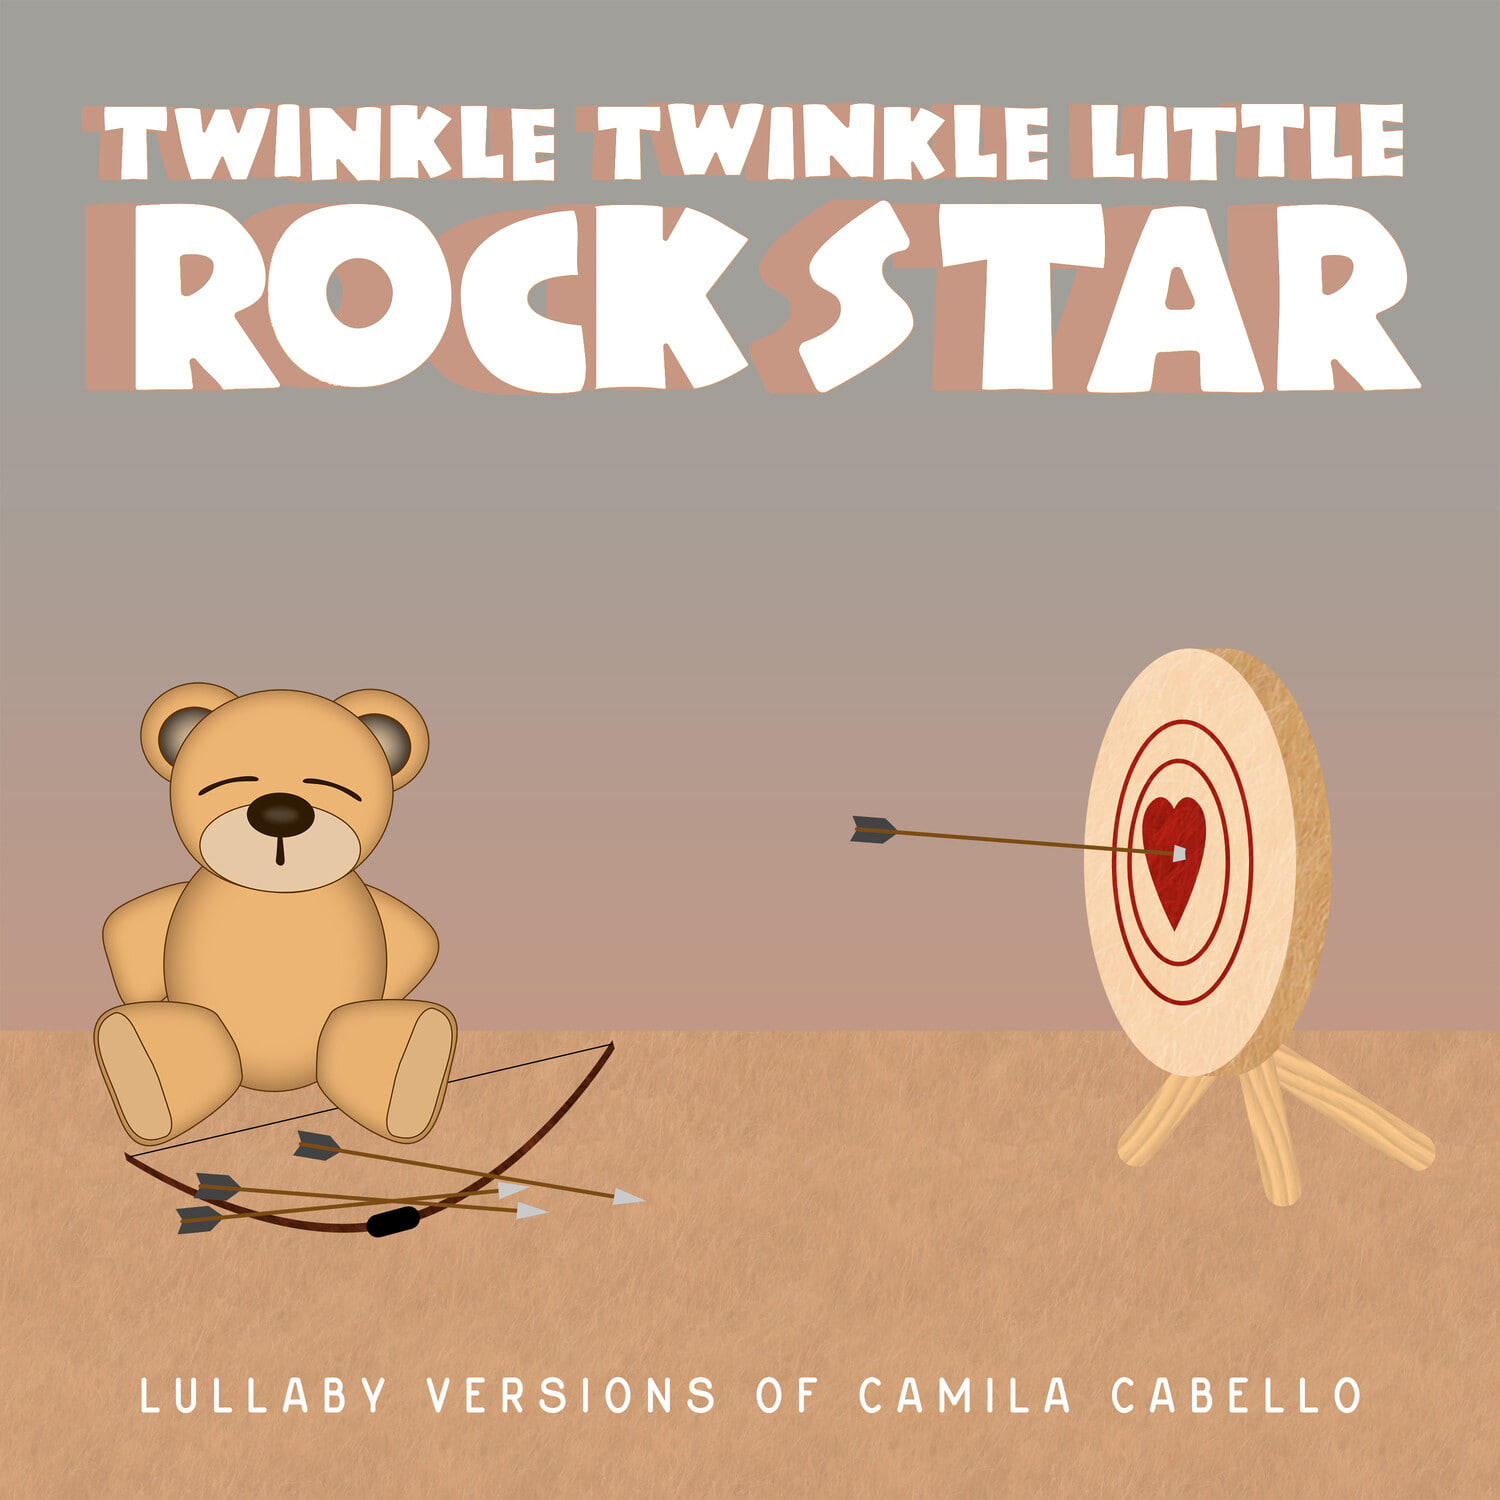 Twinkle Twinkle Little Rock Star-Se?orita